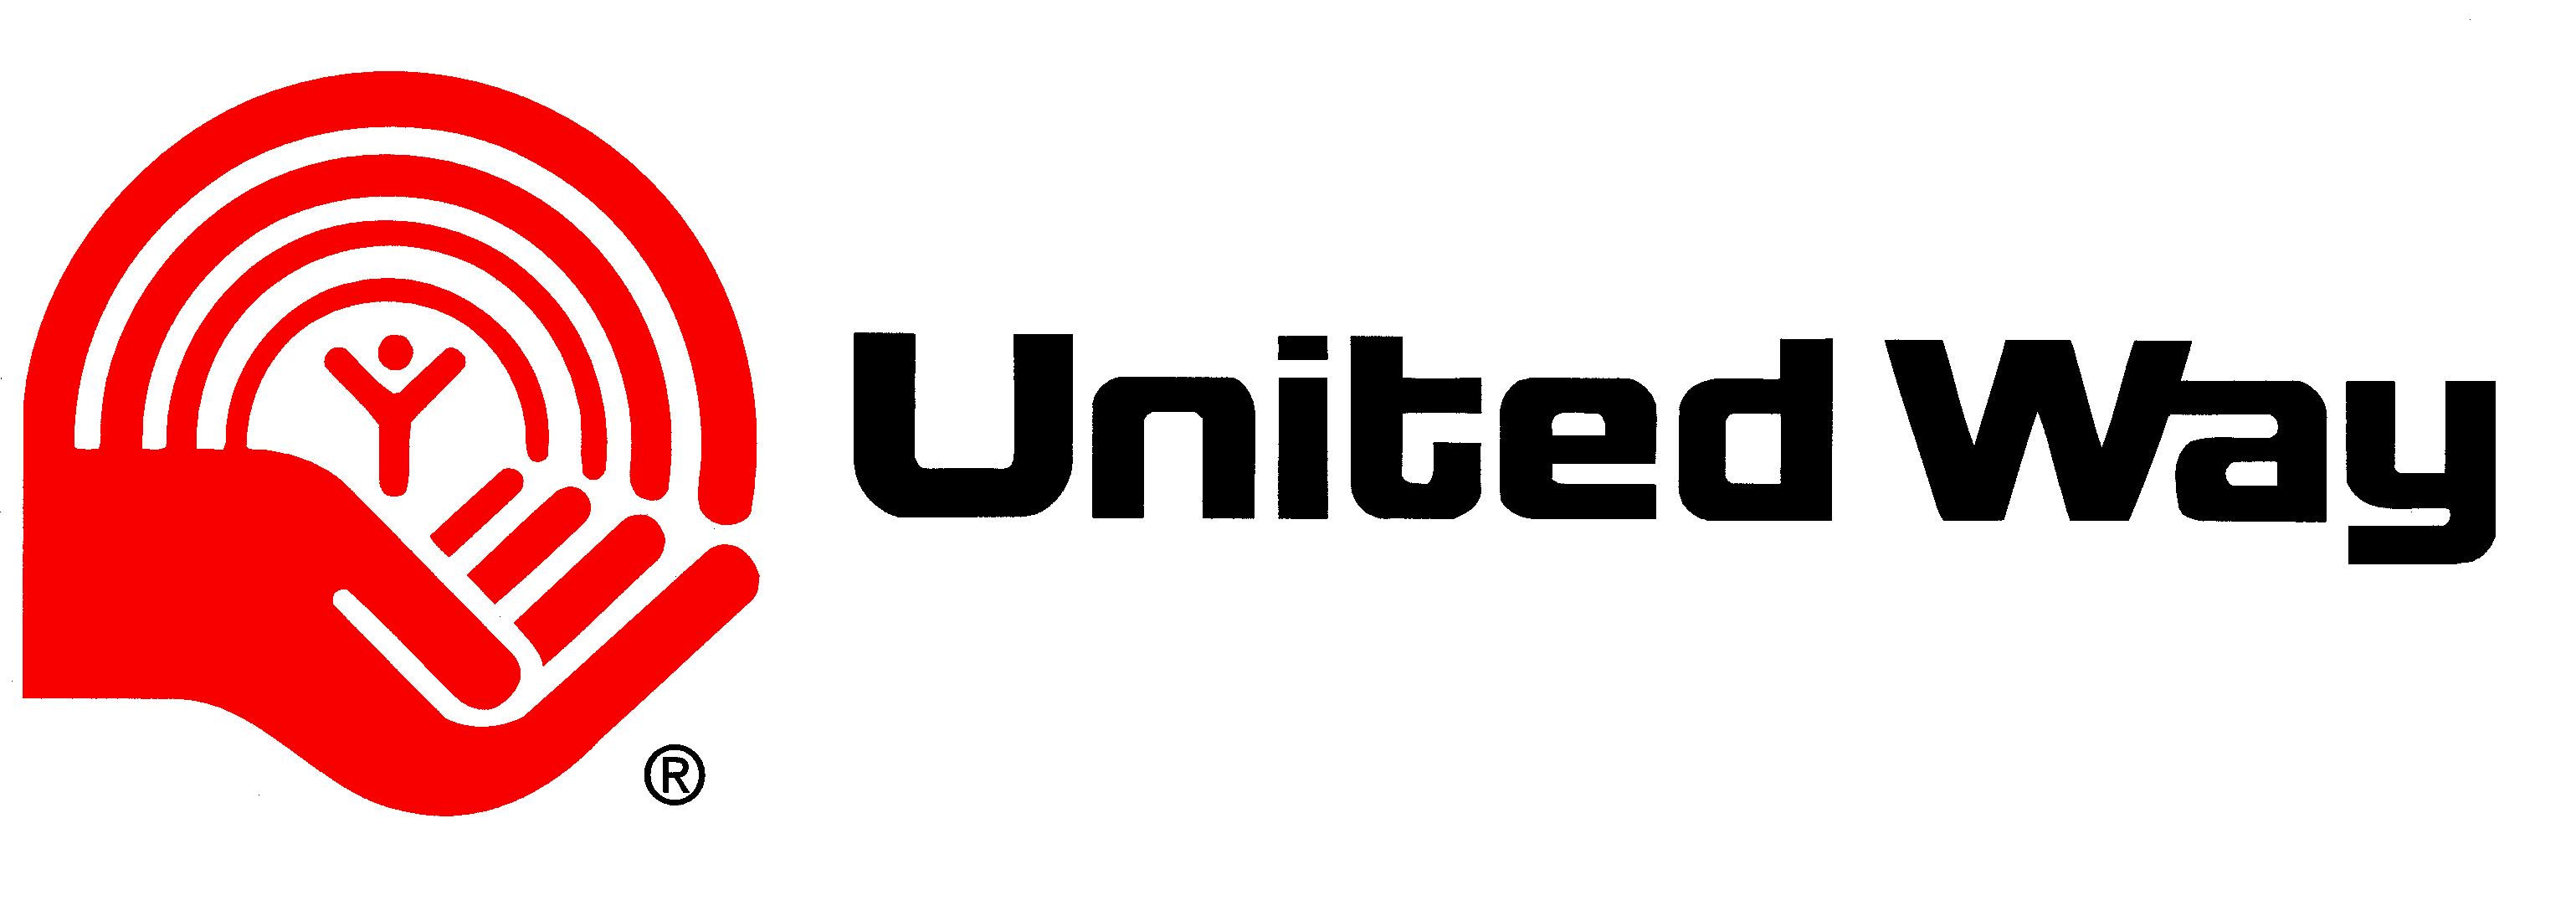 United Way Logo - united way logo - Ecology North